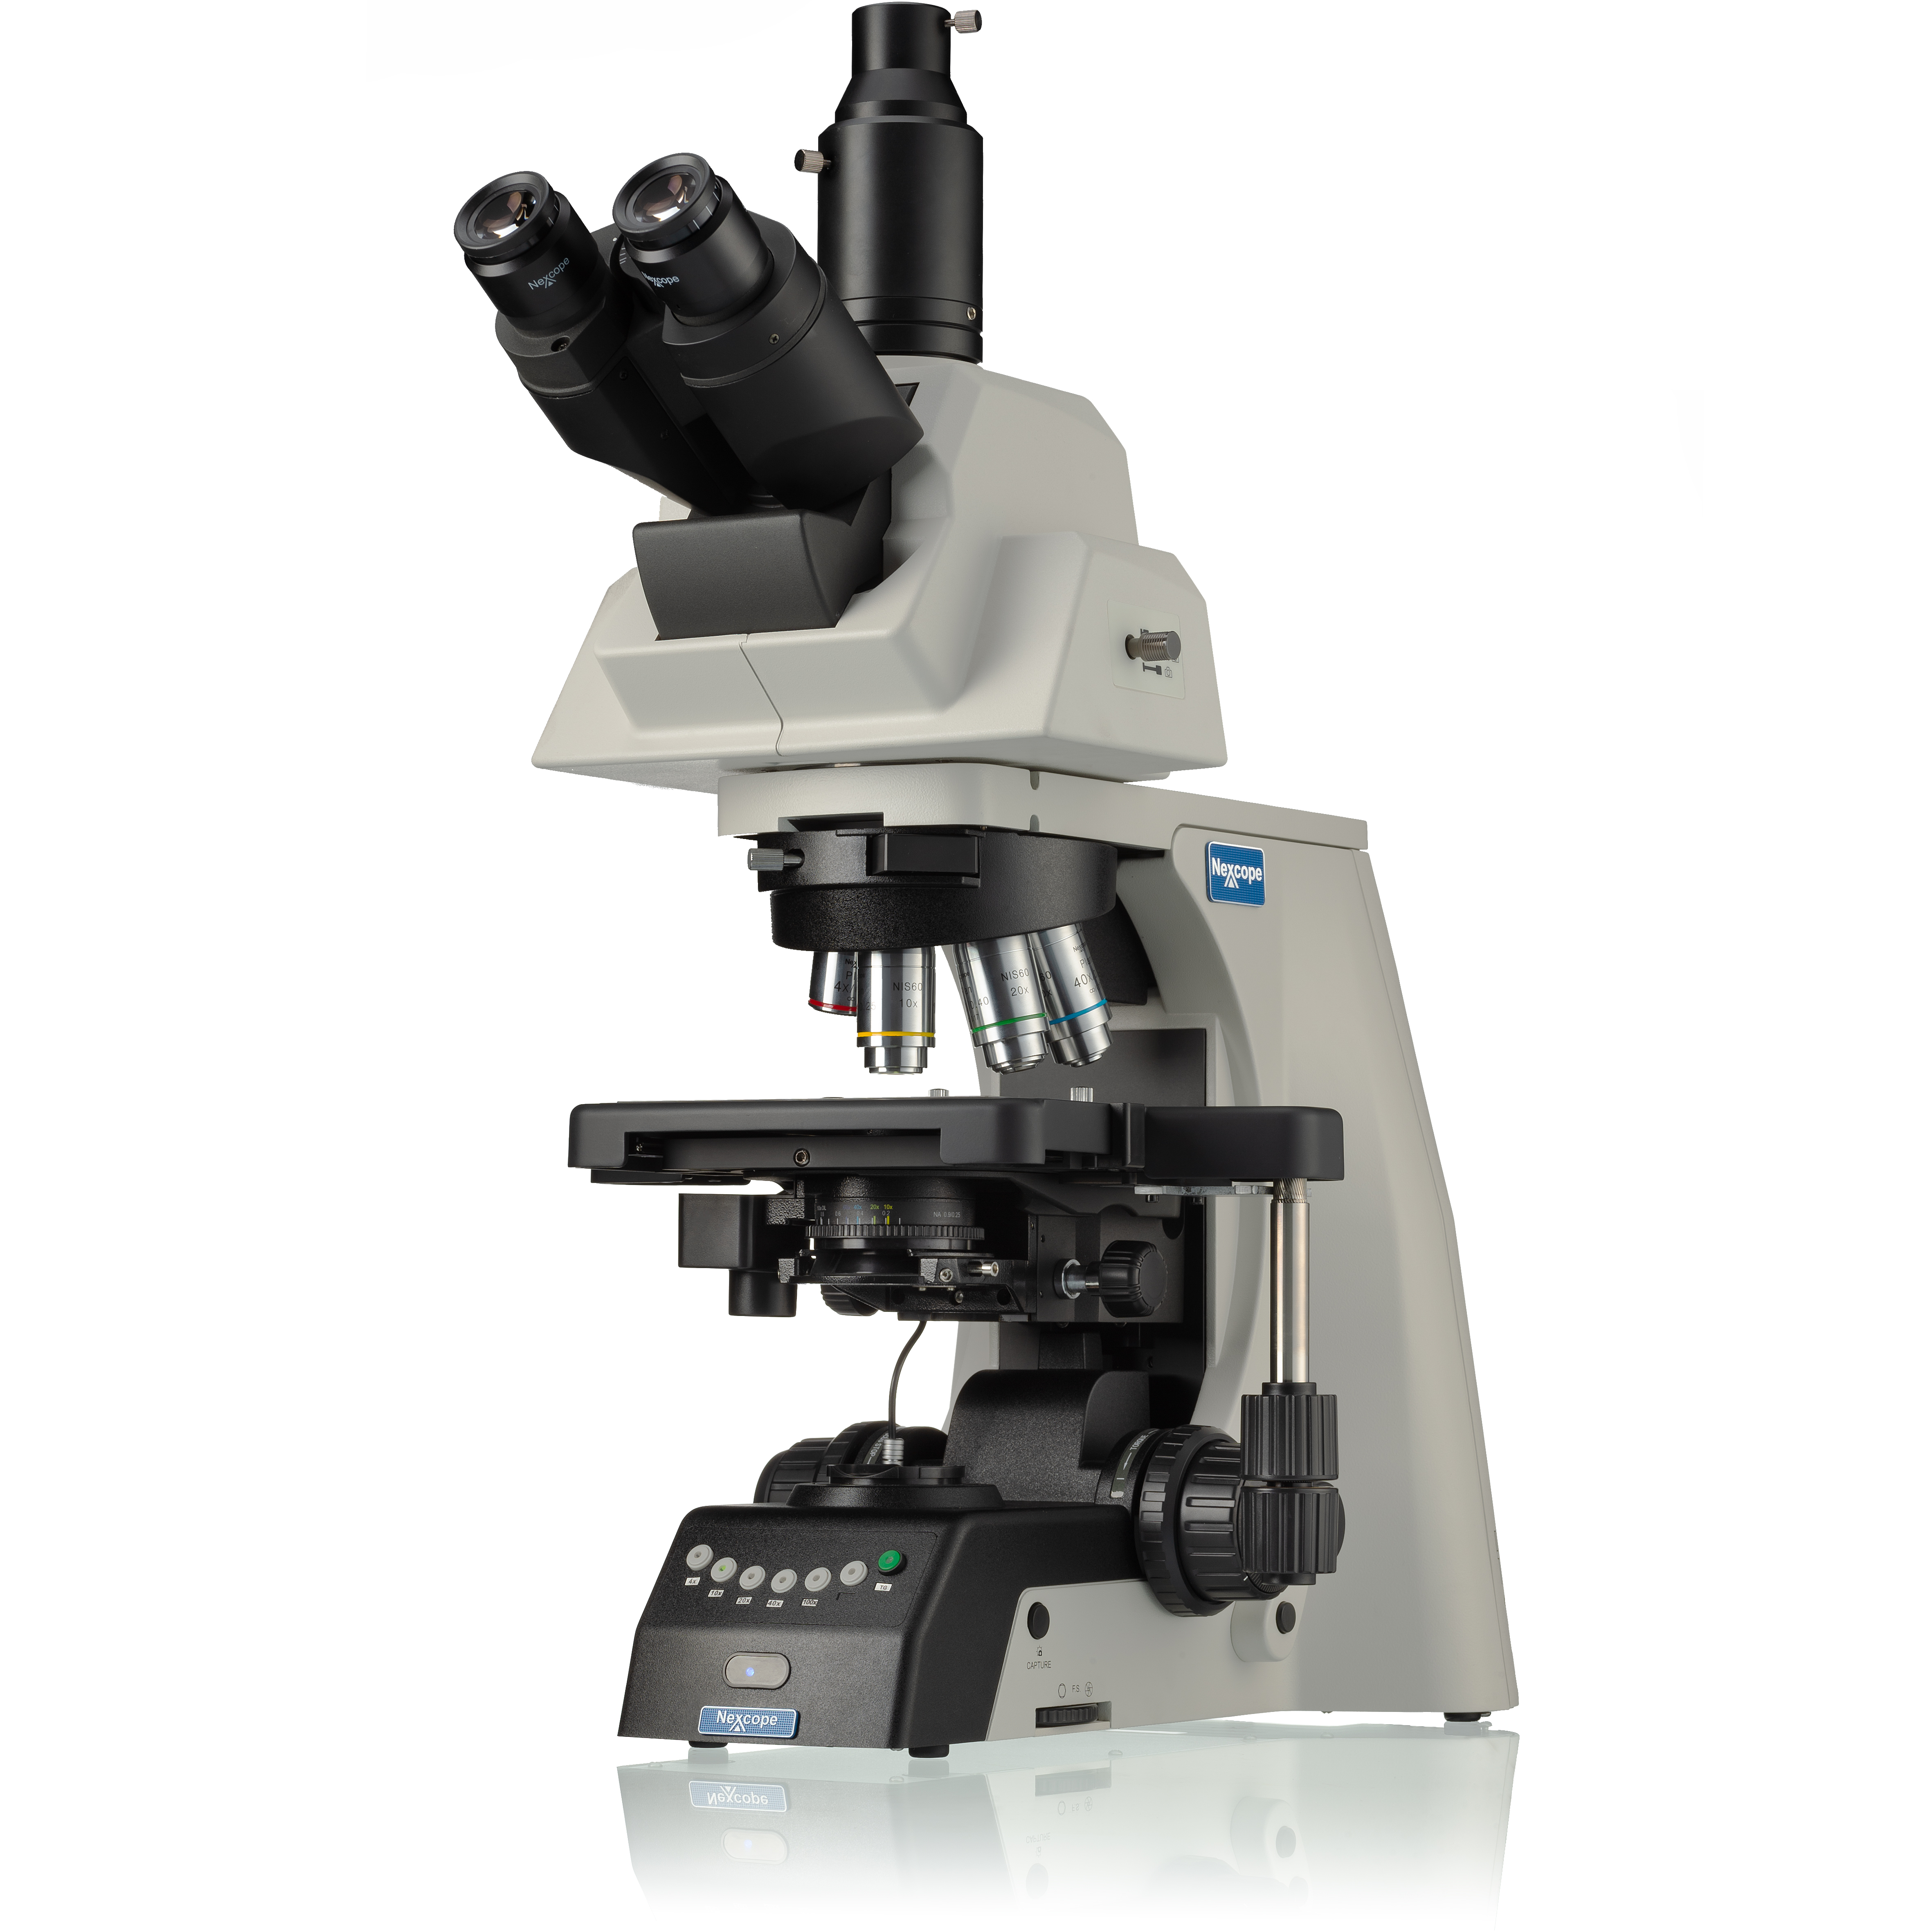 Nexcope NE930 professionelles Labormikroskop mit motorisiertem 6-fach Objektivrevolver